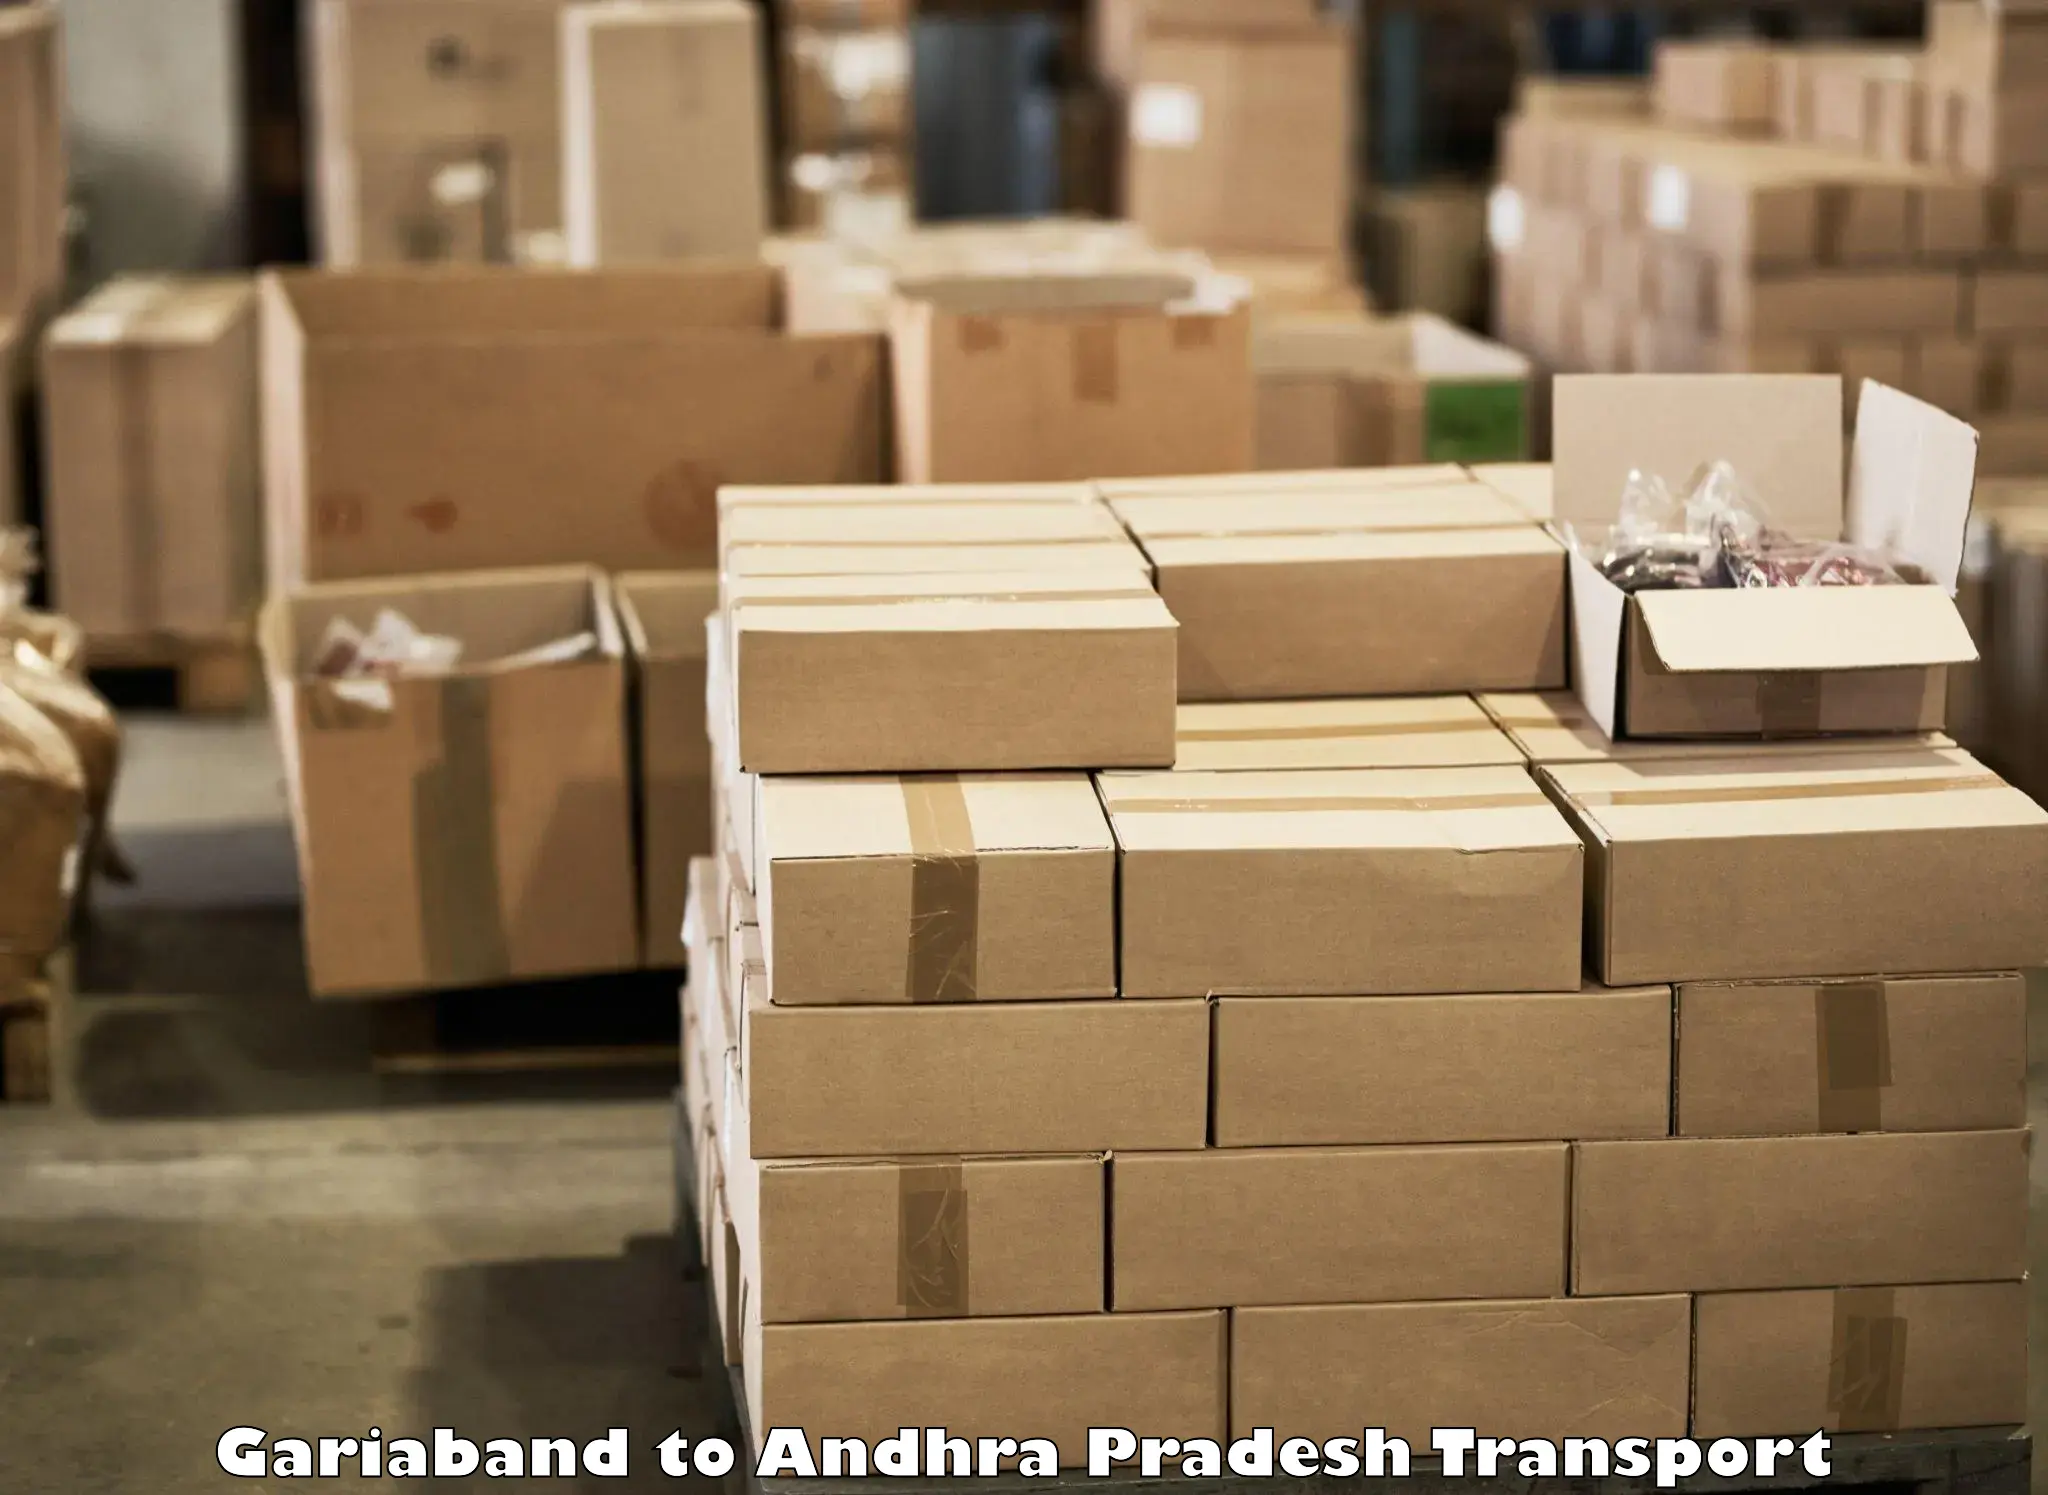 Truck transport companies in India Gariaband to Ramachandrapuram